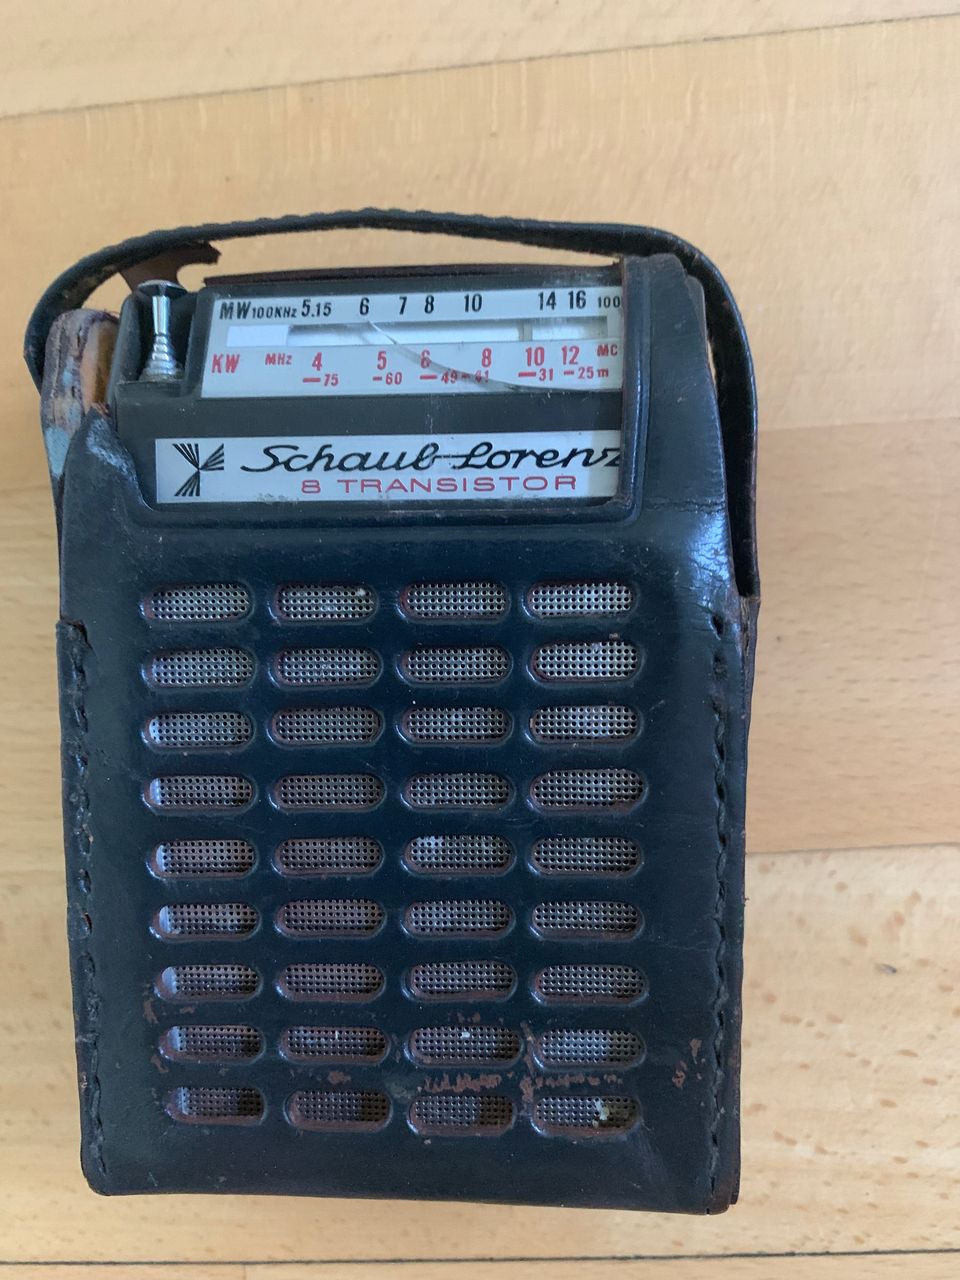 Vanha pikkuradio